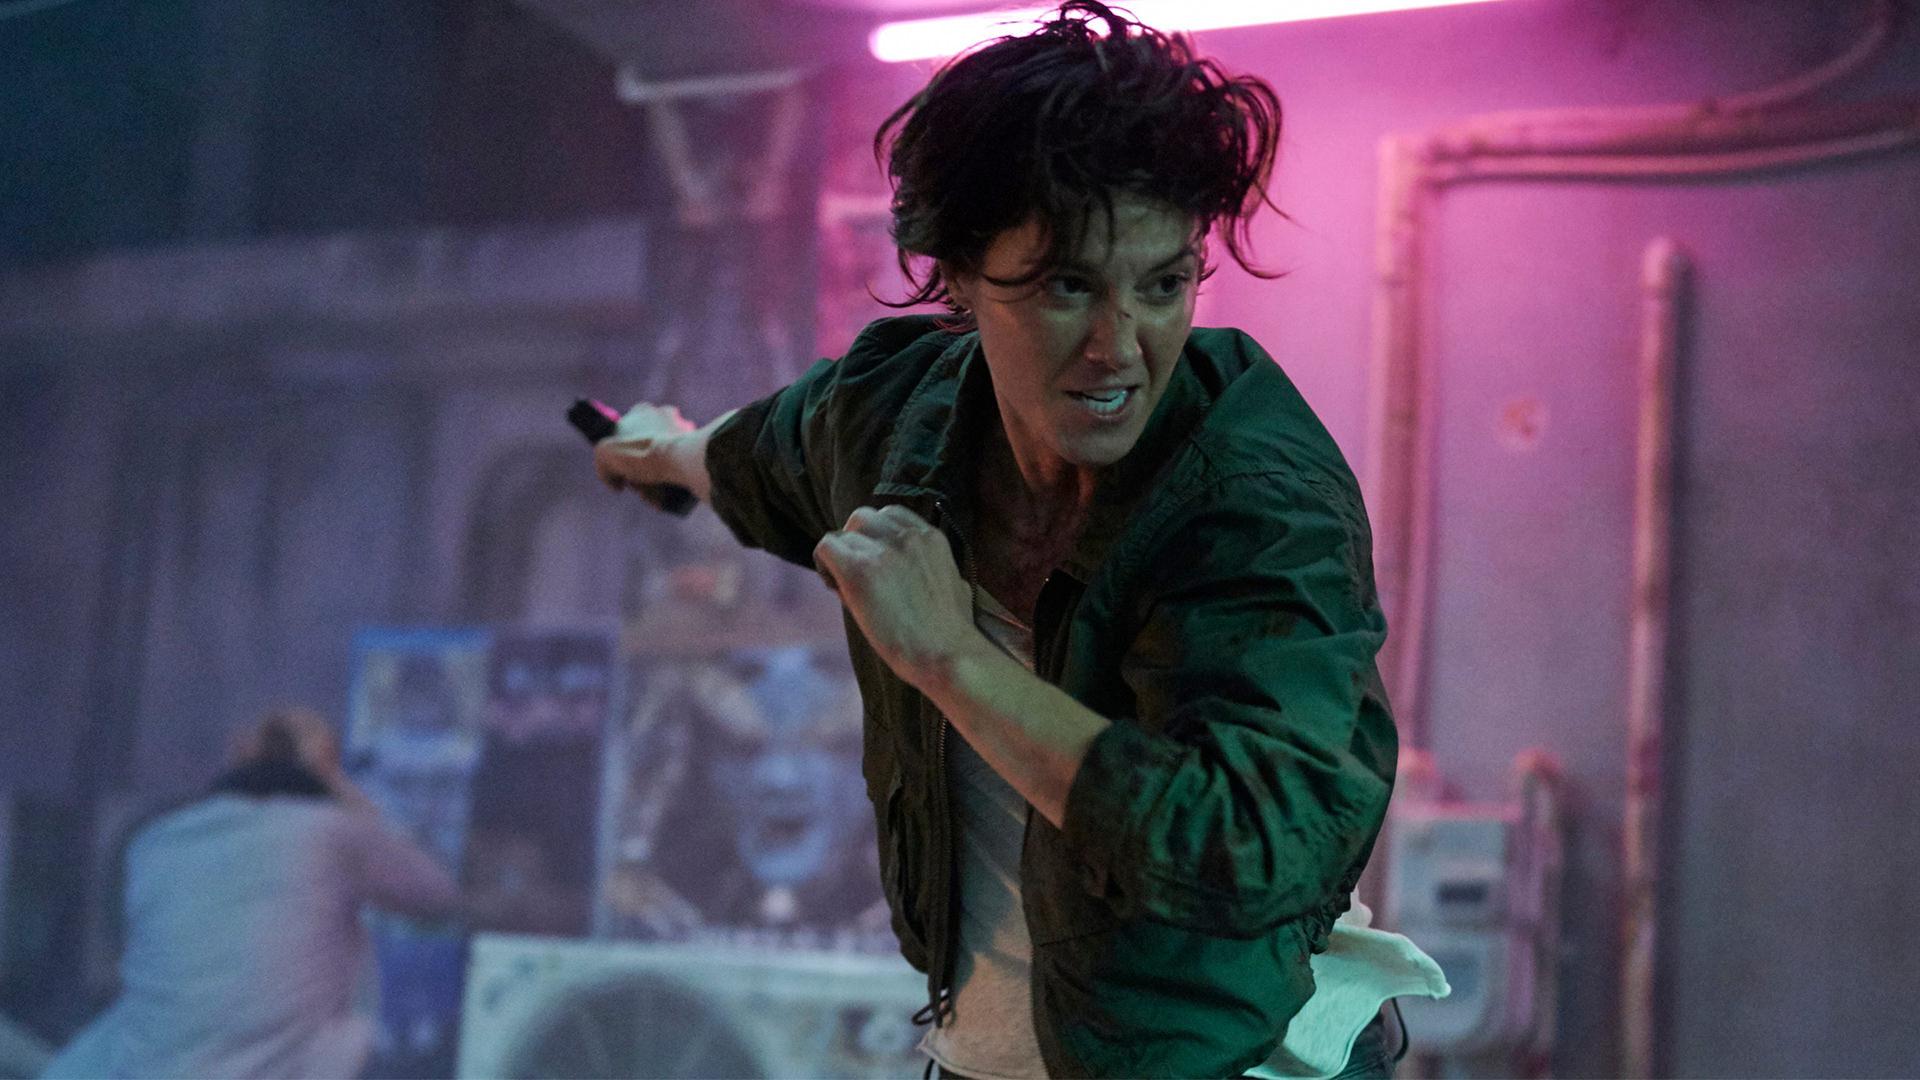 مربی الیزابت وینستد در نقش کیت در فیلم Kate در حال مبارزه با دشمنانش با تفنگ